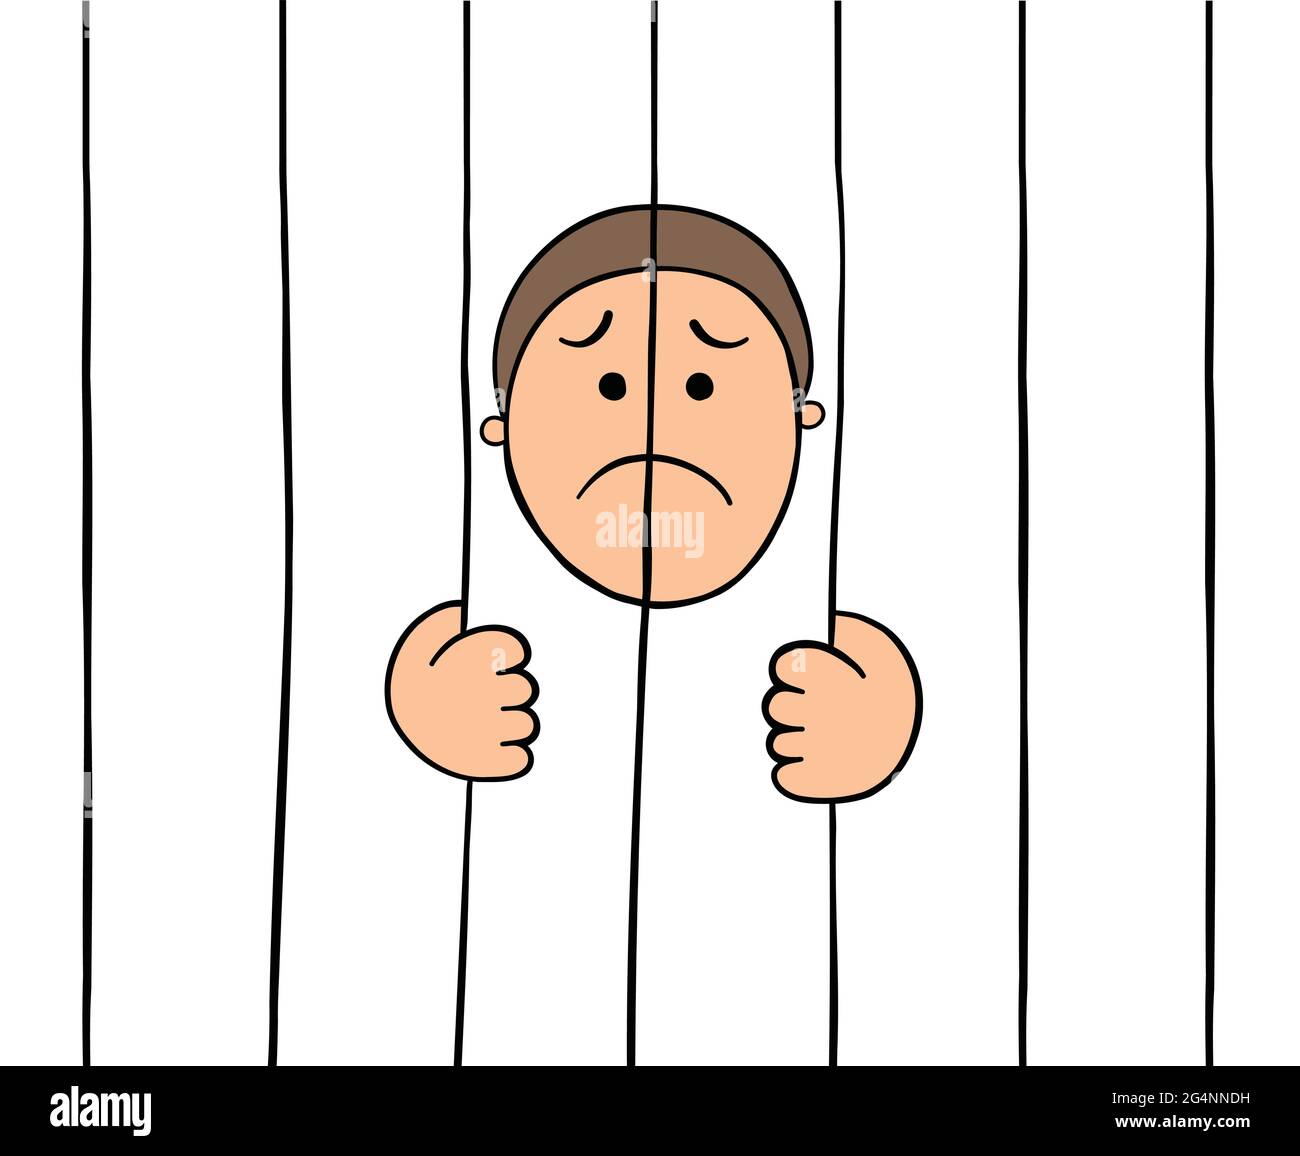 Dessin animé prisonnier tenant des barreaux de prison, illustration vectorielle. Contours colorés et noirs. Illustration de Vecteur